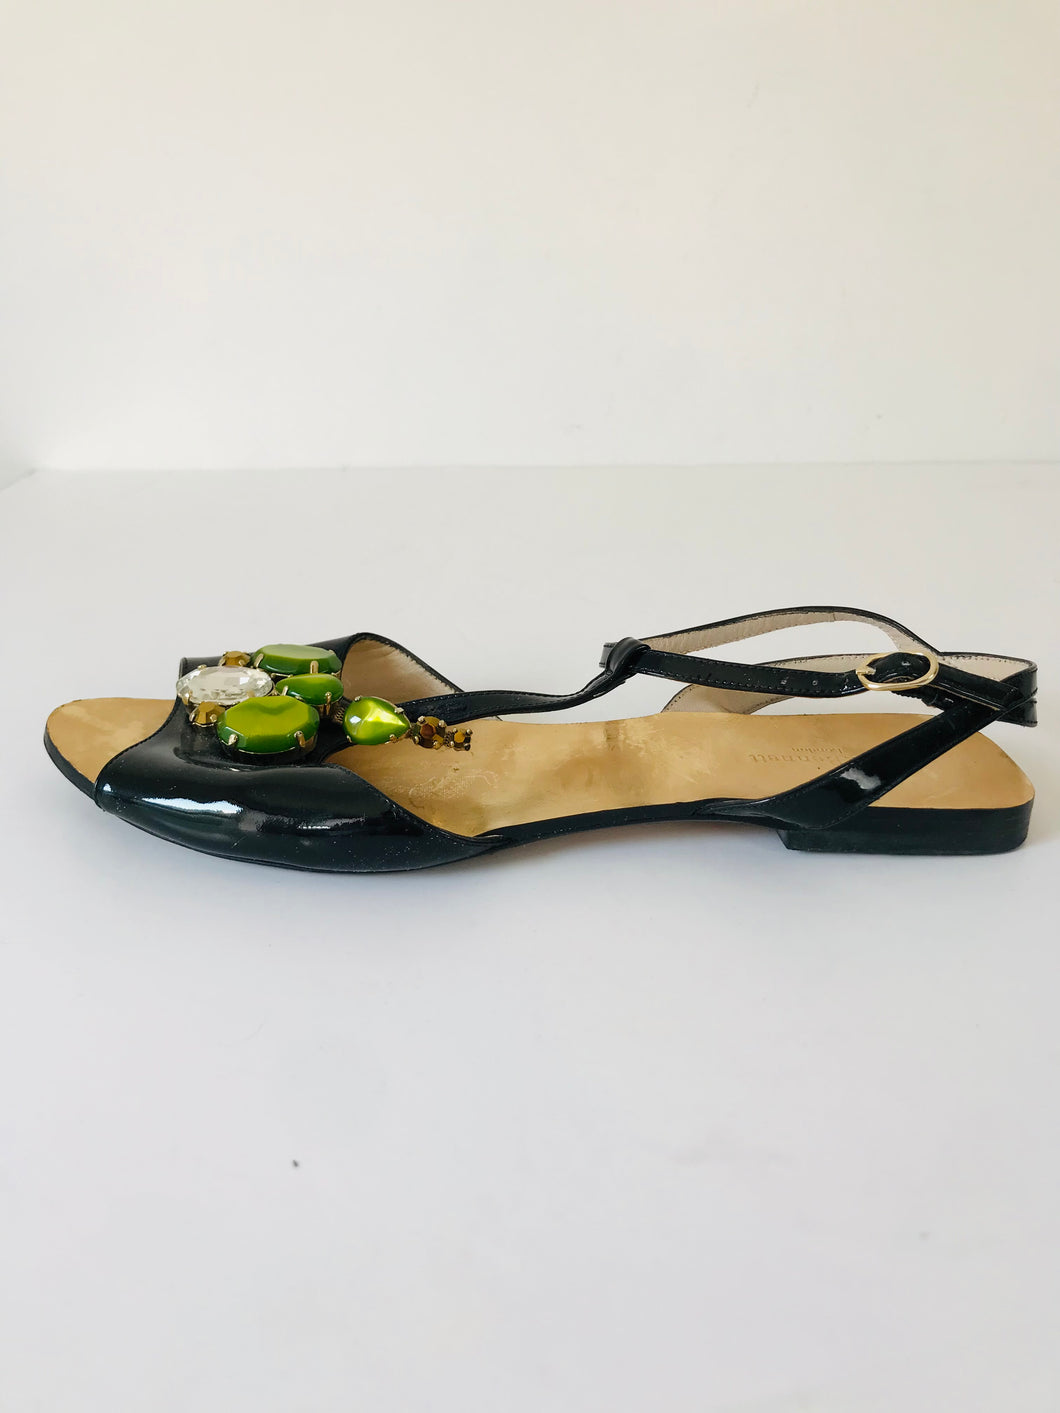 LK Bennett Women's Crystal Patent Leather Sandals | 39 UK6 | Black